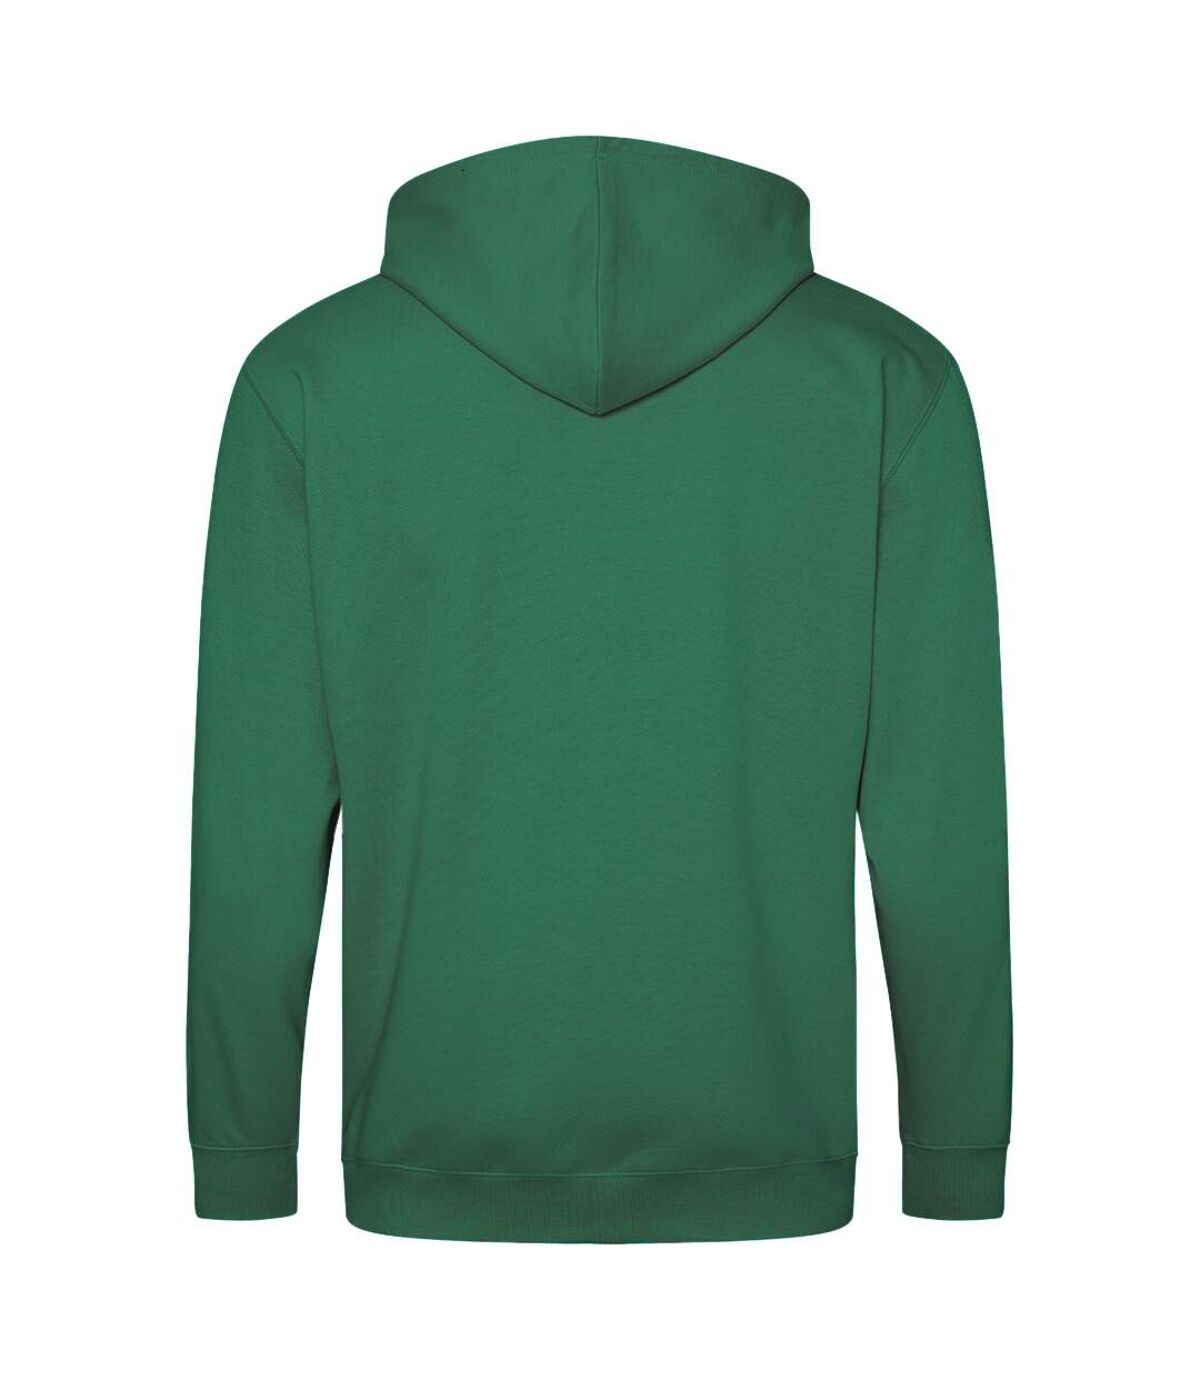 Awdis - Sweatshirt à capuche et fermeture zippée - Homme (Vert bouteille) - UTRW180